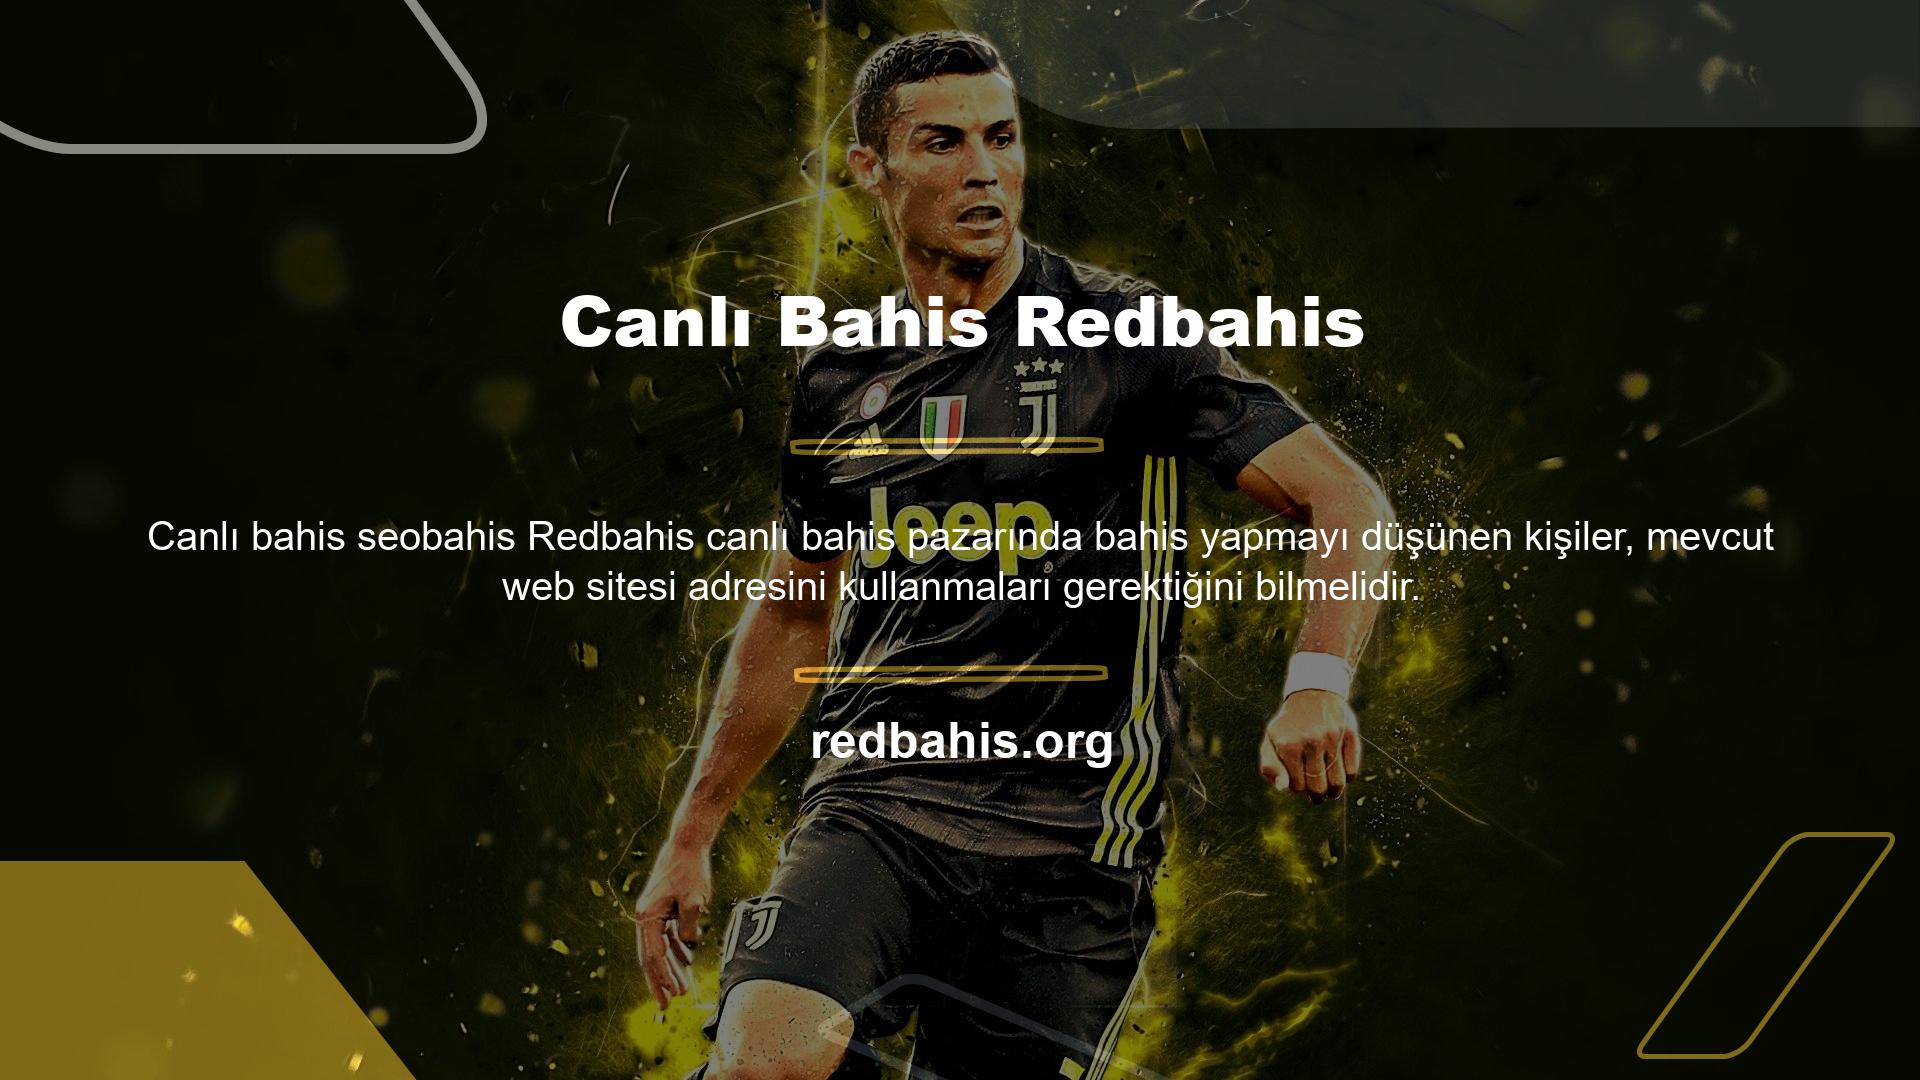 Ayrıca Redbahis web sitesi BTK tarafından engellenmiş olabilir